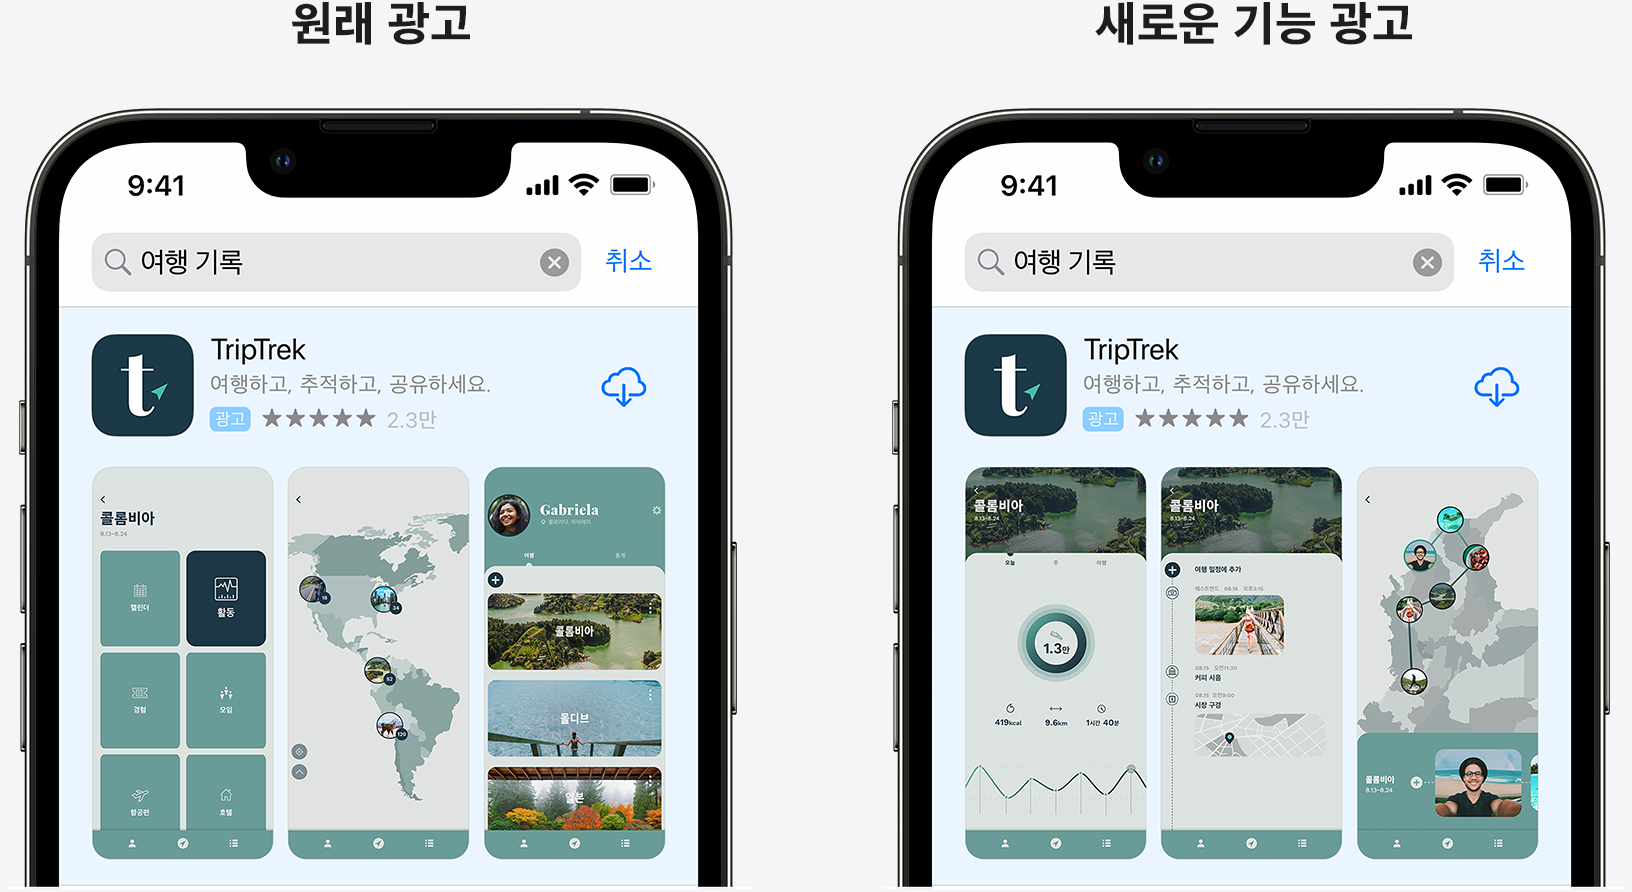 예제 앱 TripTrek에 대한 원래 광고와 새로운 기능을 강조하는 광고를 나란히 놓고 비교합니다.